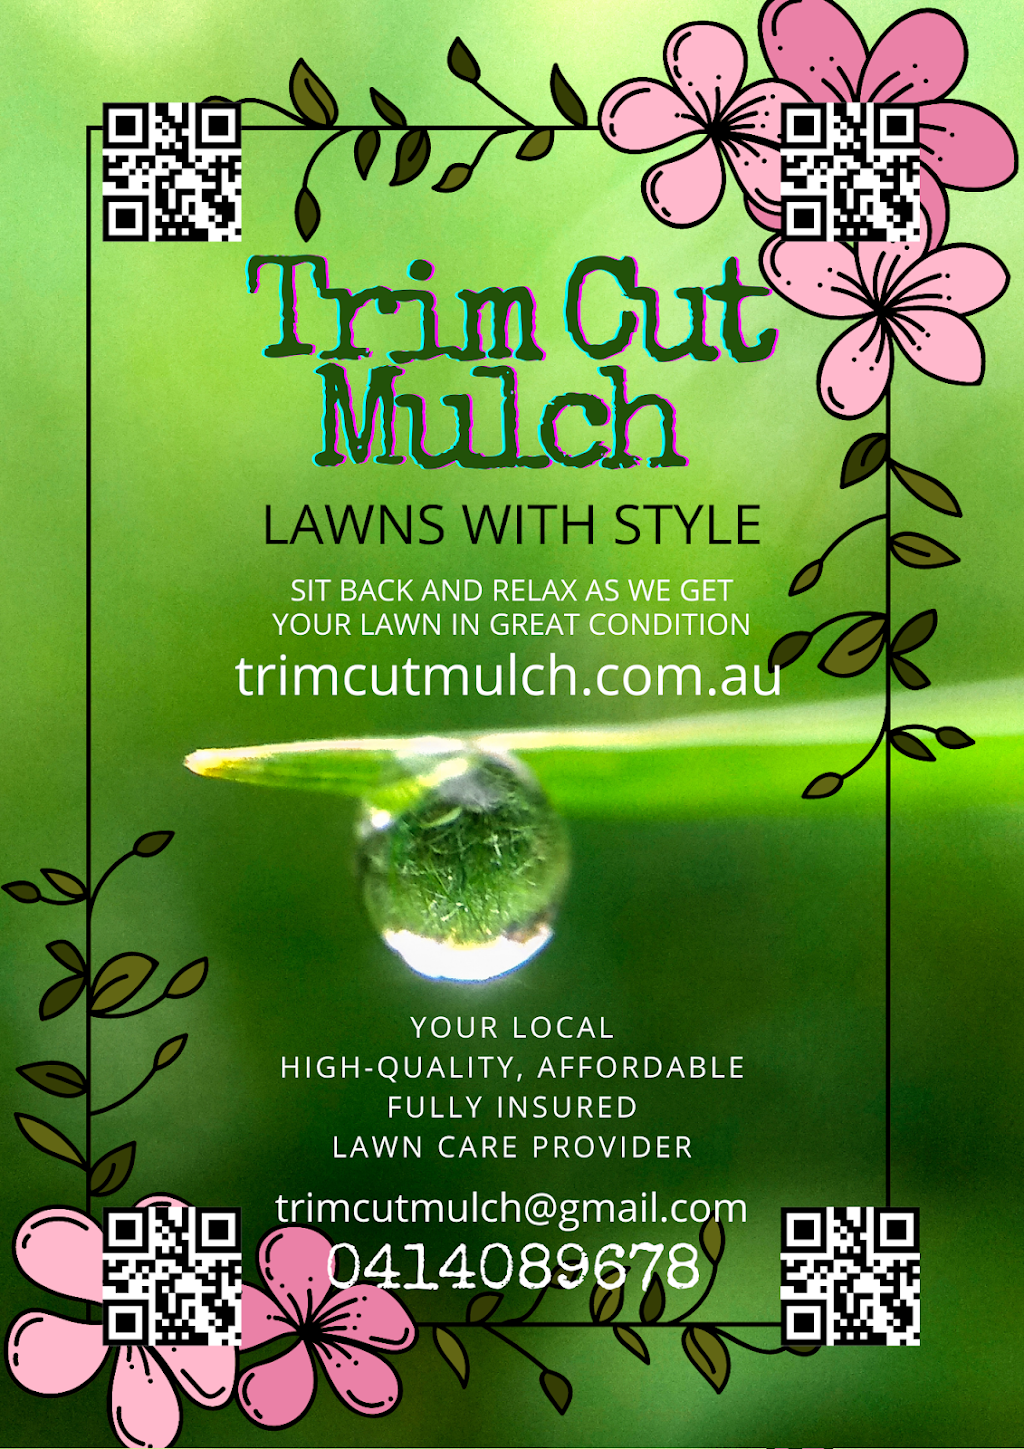 Trim Cut Mulch | Caloundra West QLD 4551, Australia | Phone: 0414 089 678